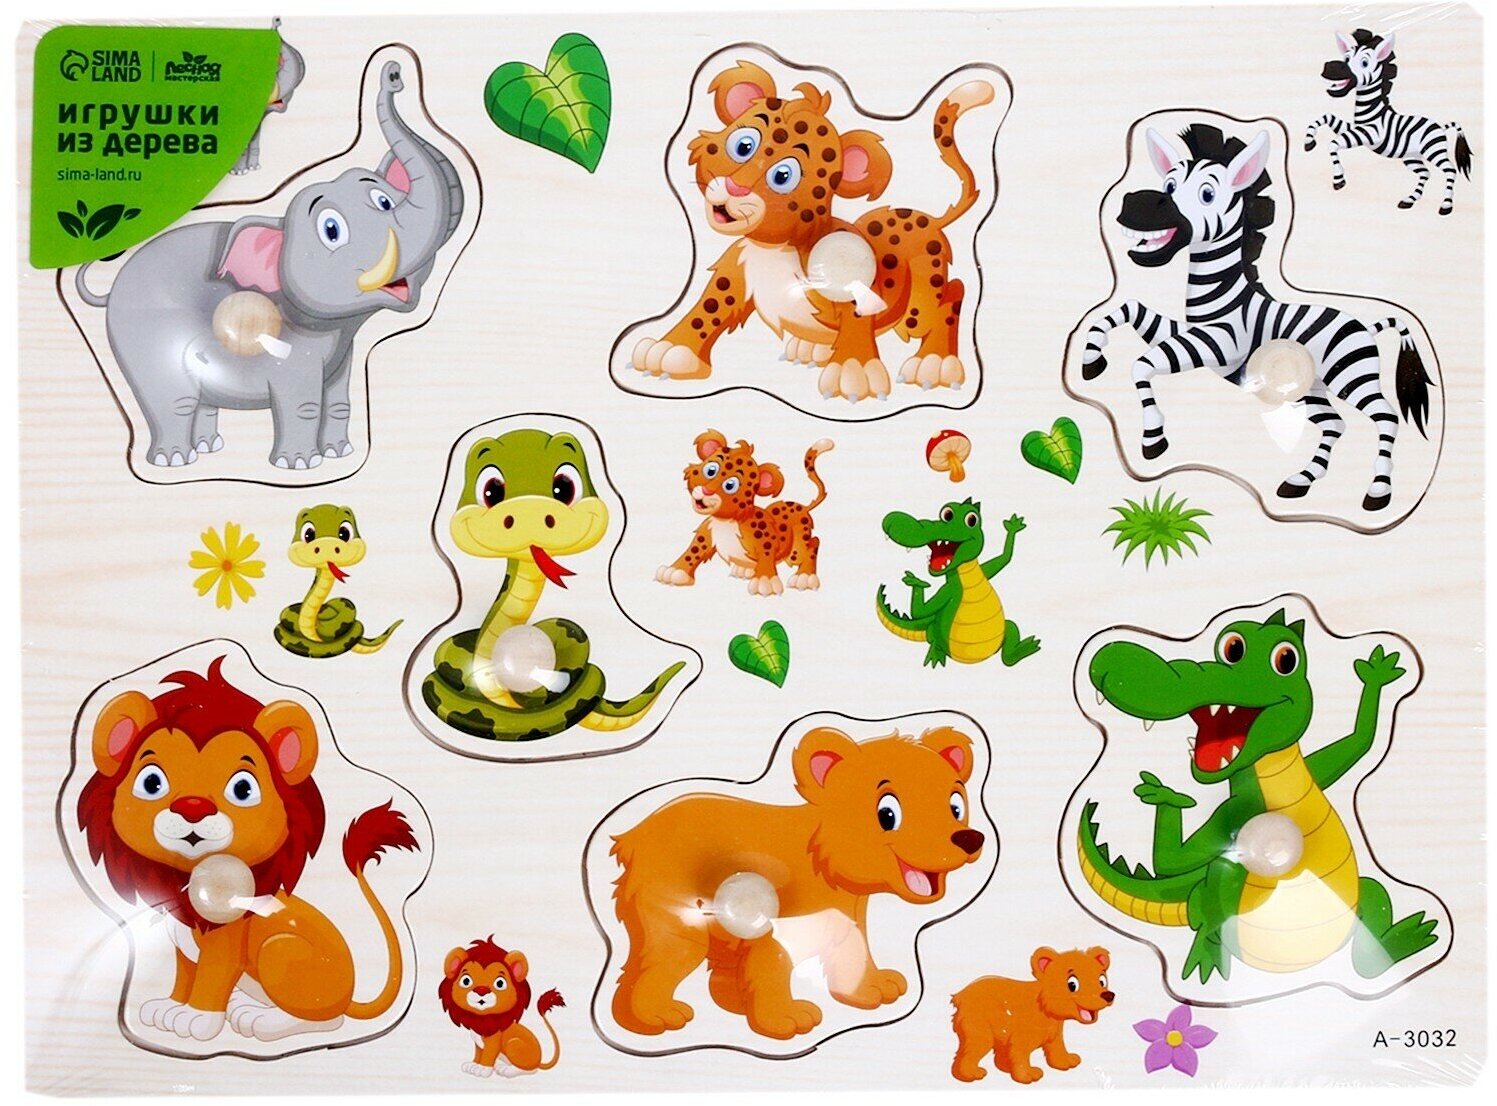 Рамка-вкладыш "Подбери картинку. В мире животных", 7 элементов, для детей и малышей